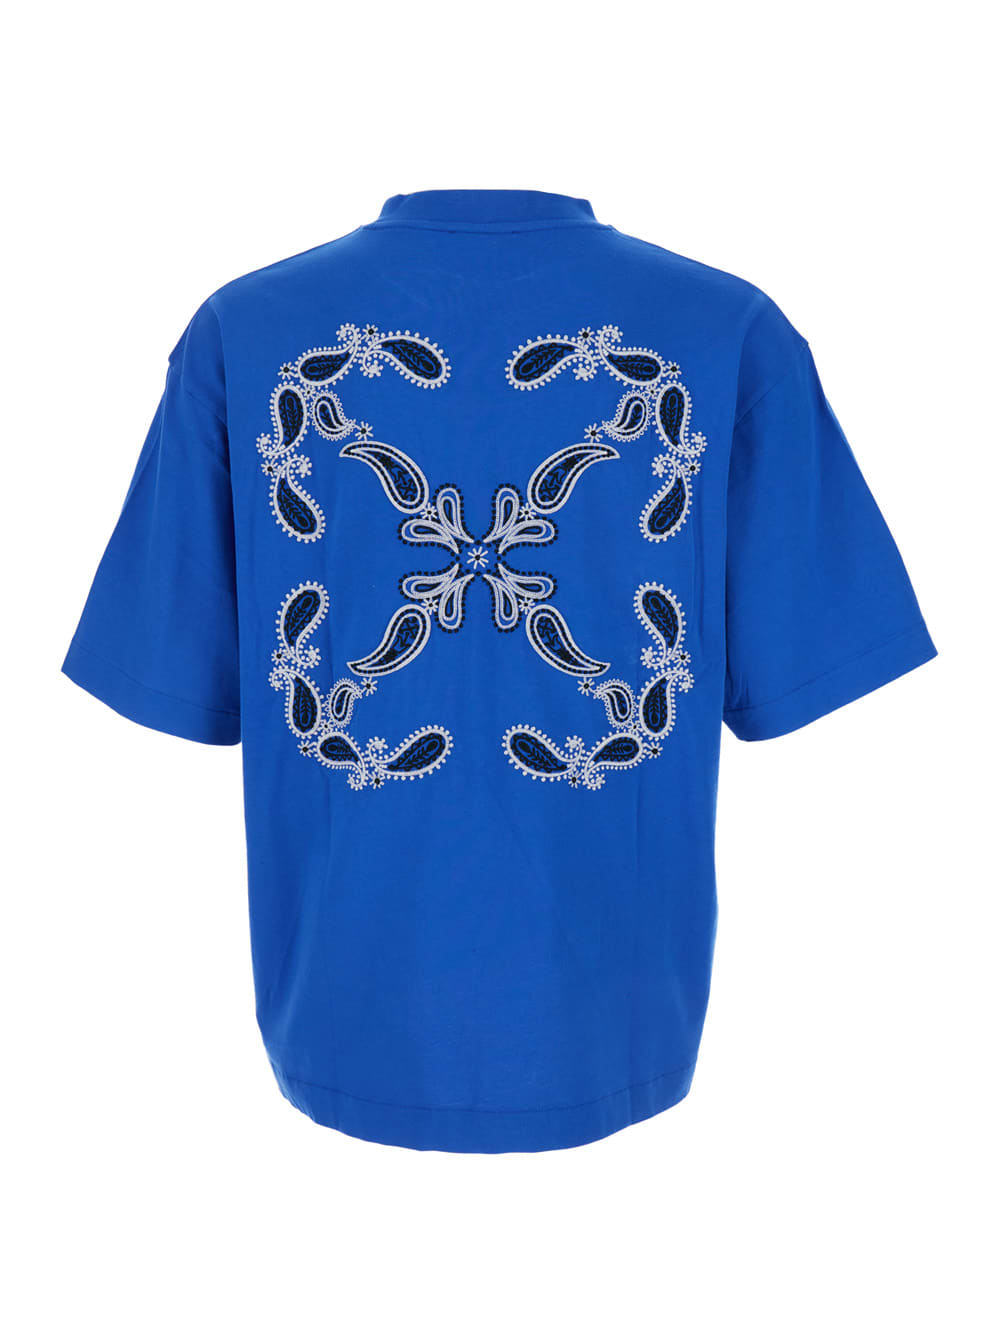 Shop Off-white Blue Crewneck T-shirt In Cotton Man